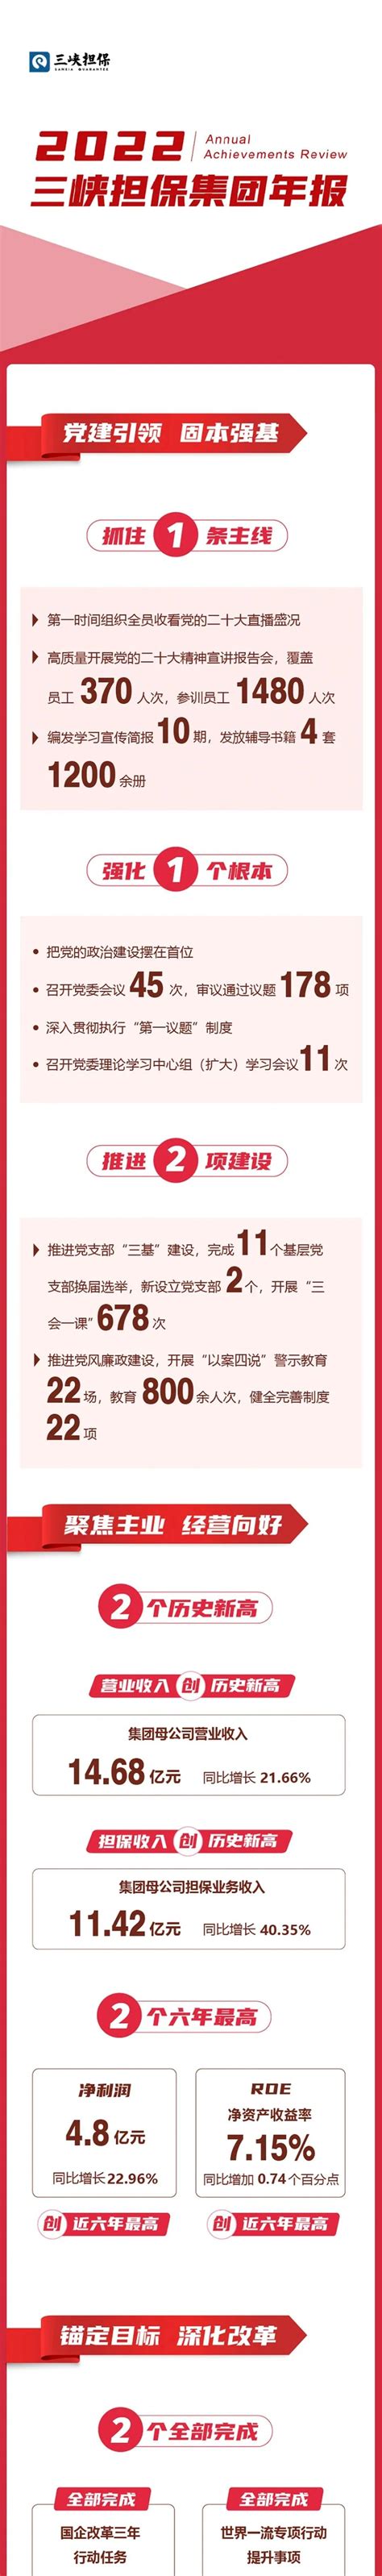 重庆三峡担保集团2022年成绩单出炉-新重庆客户端